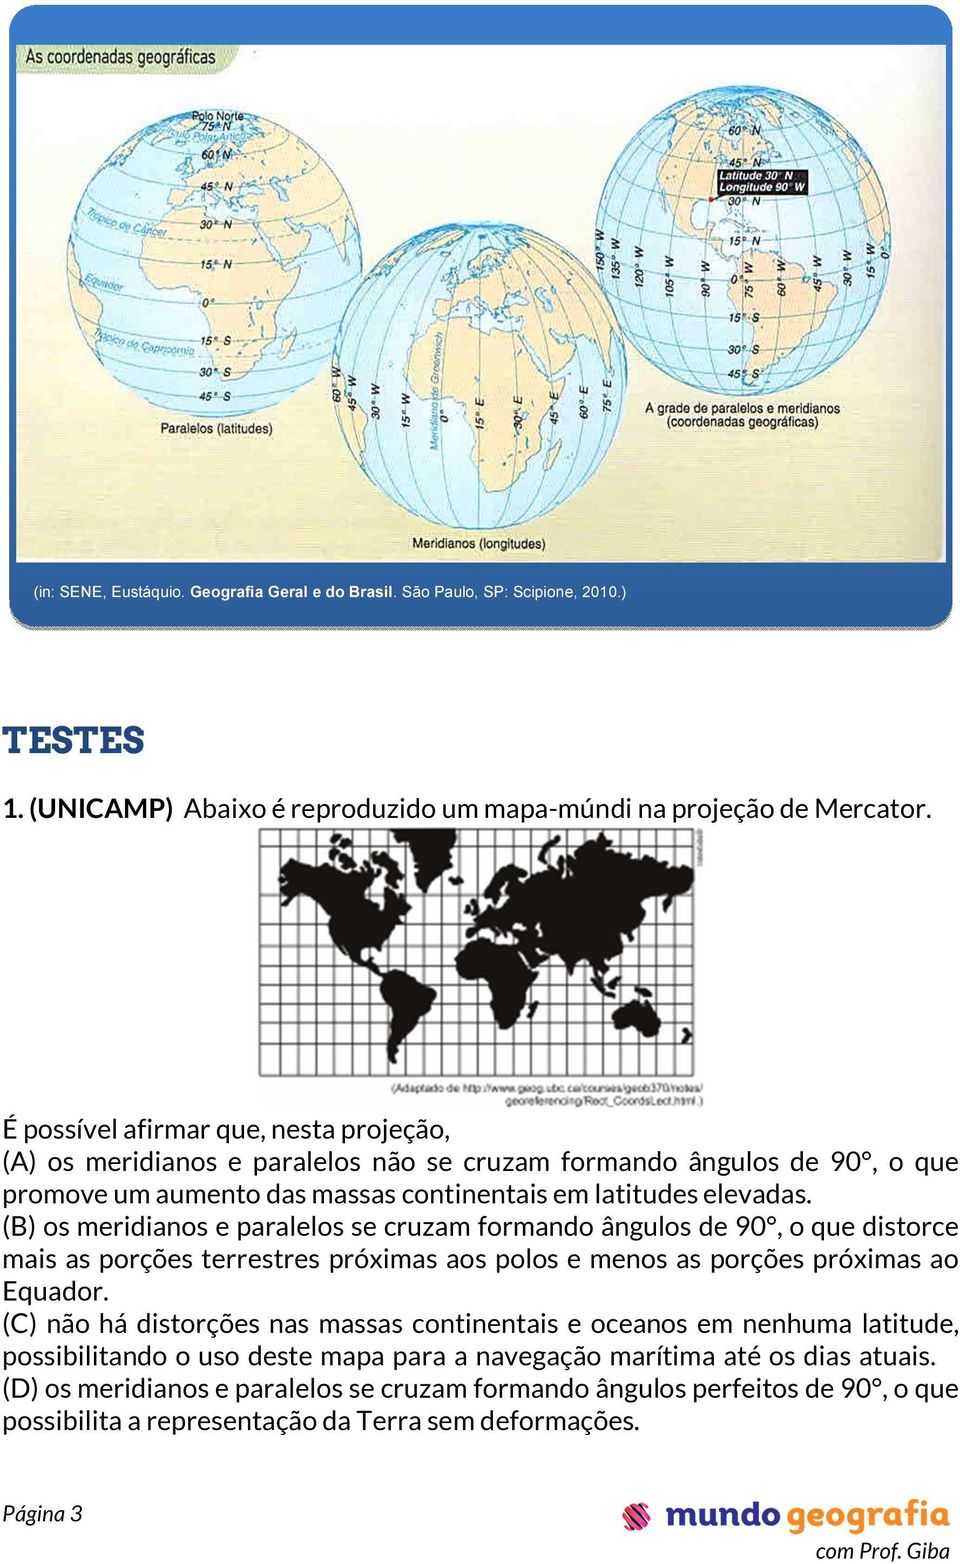 (B) os meridianos e paralelos se cruzam formando ângulos de 90, o que distorce mais as porções terrestres próximas aos polos e menos as porções próximas ao Equador.